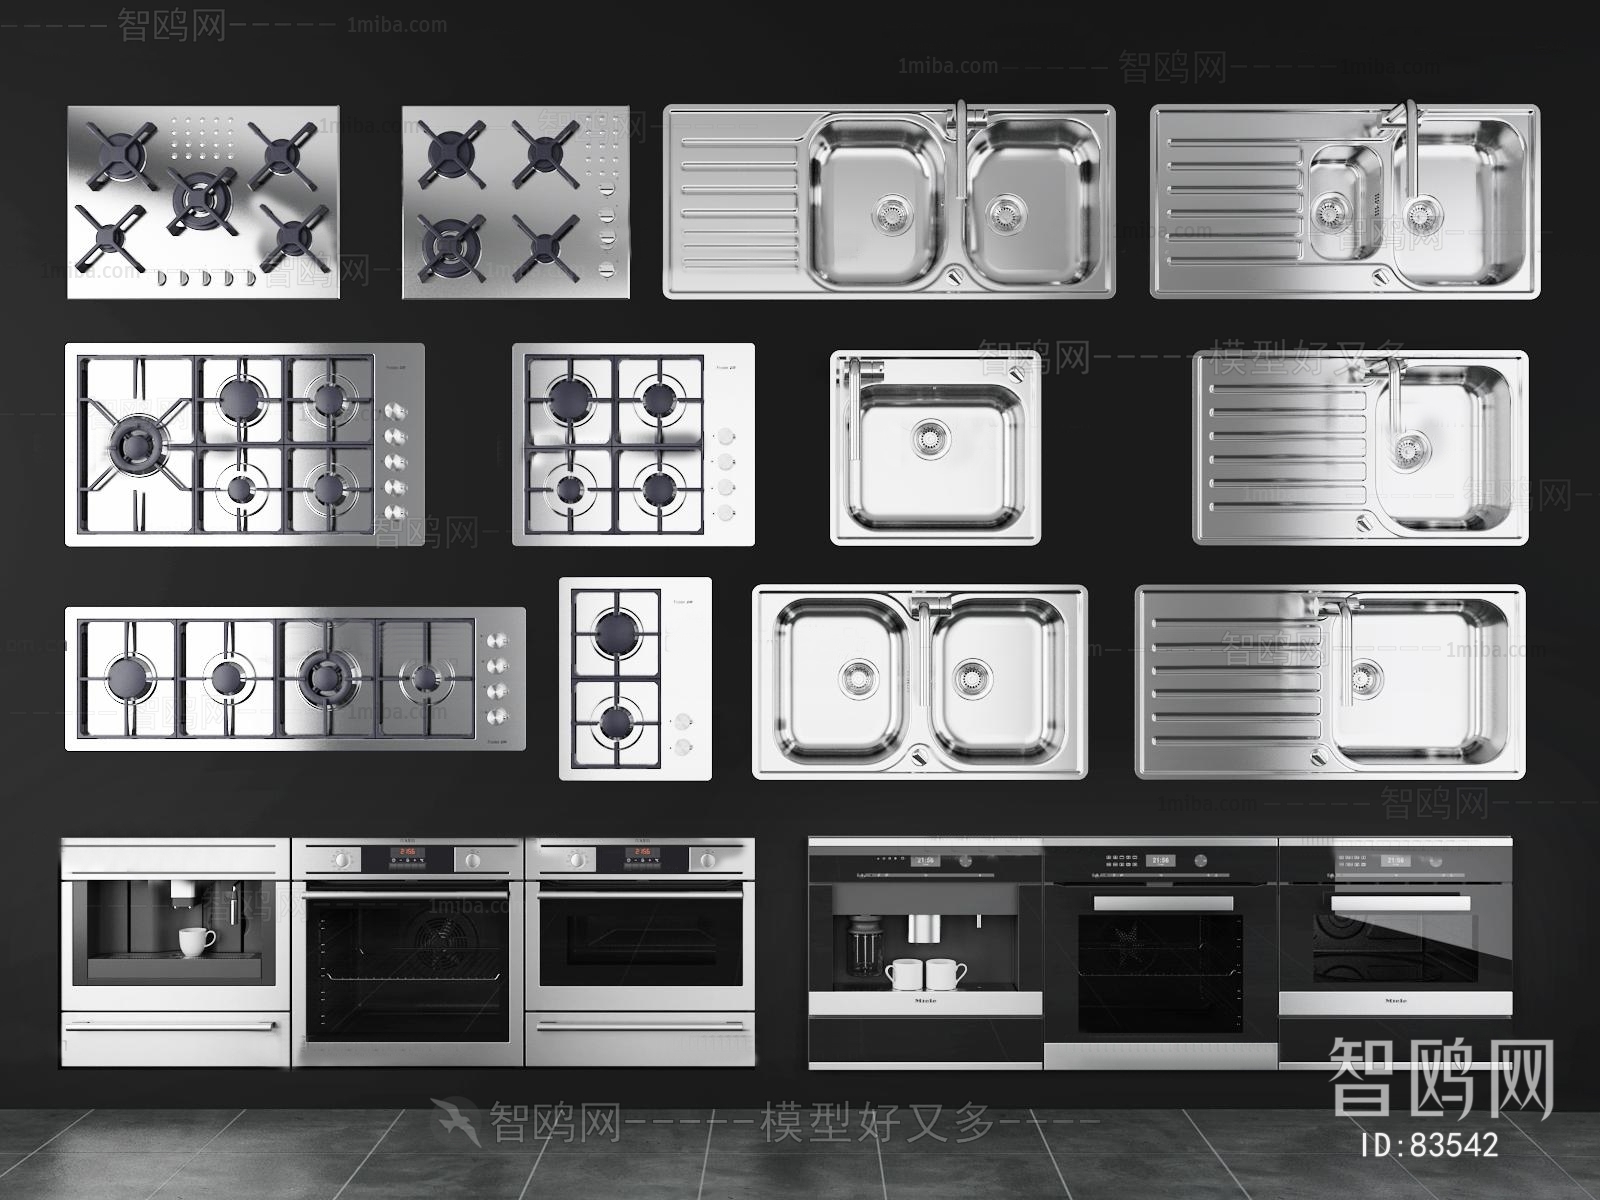 Modern Electric Kitchen Appliances